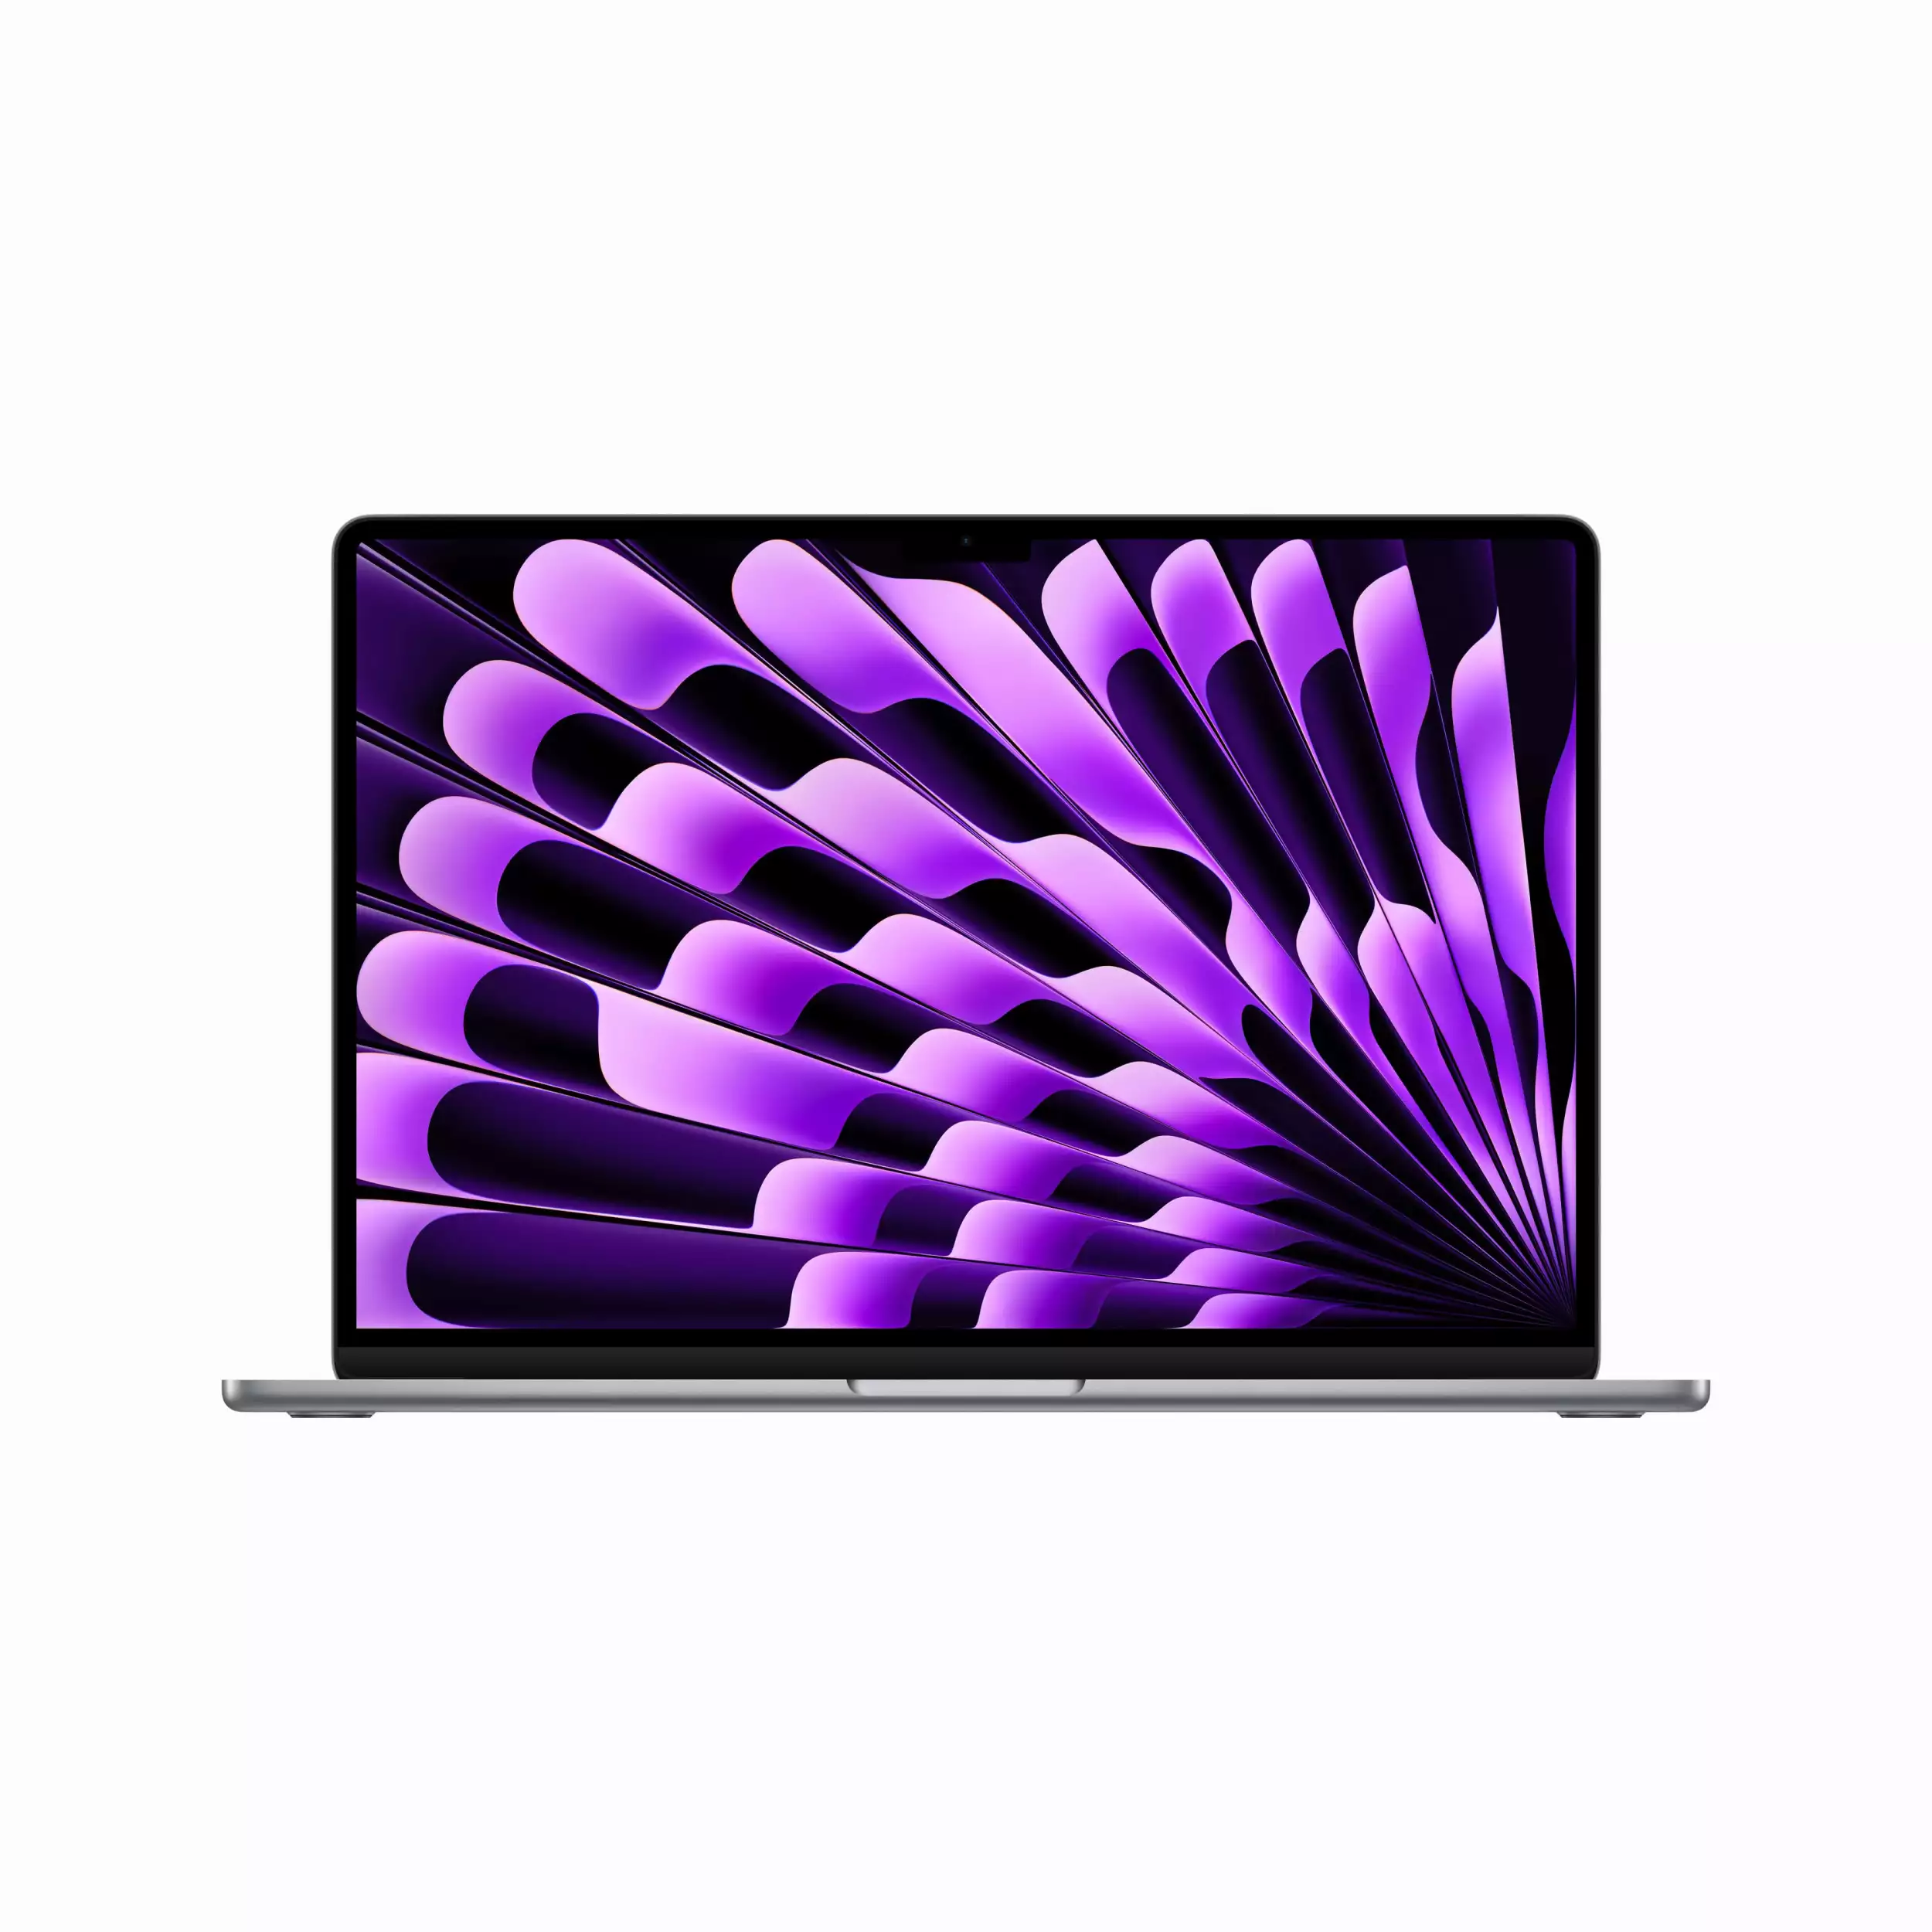 MacBook Air 15.3 inc M2 8CPU 10GPU 8GB 256GB Uzay Grisi MQKP3TU/A